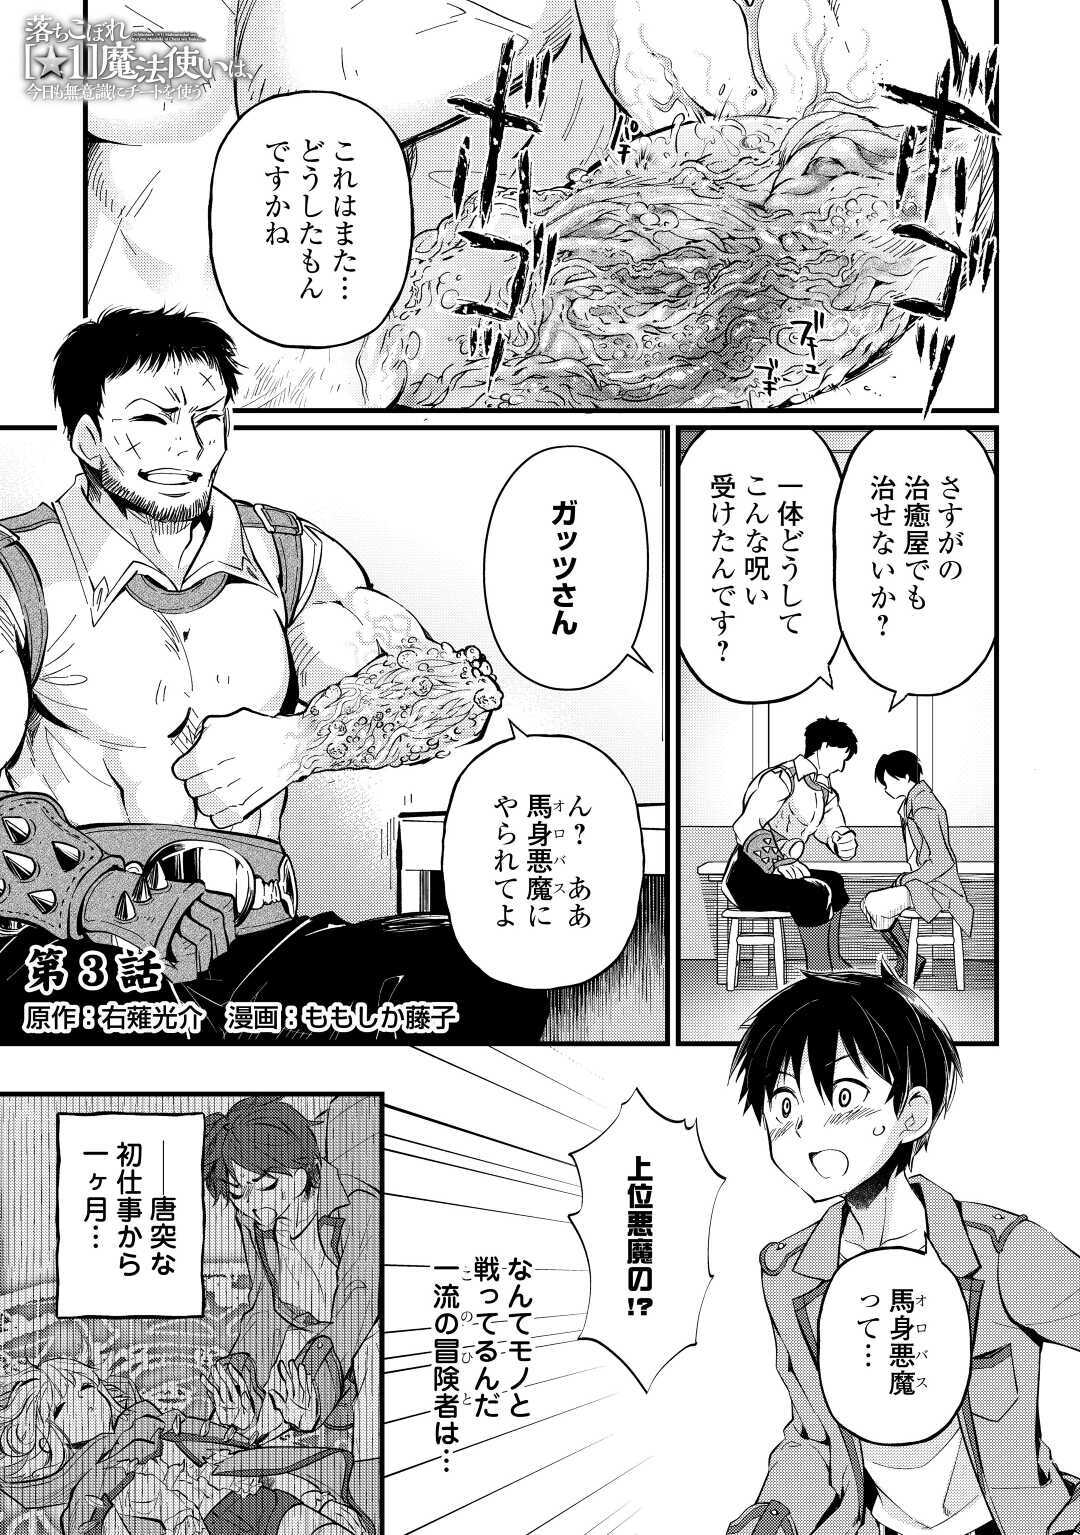 Ochikobore 1 Mahou Tsukai wa, Kyou mo Muishiki ni Cheat o Tsukau - Chapter 3 - Page 1